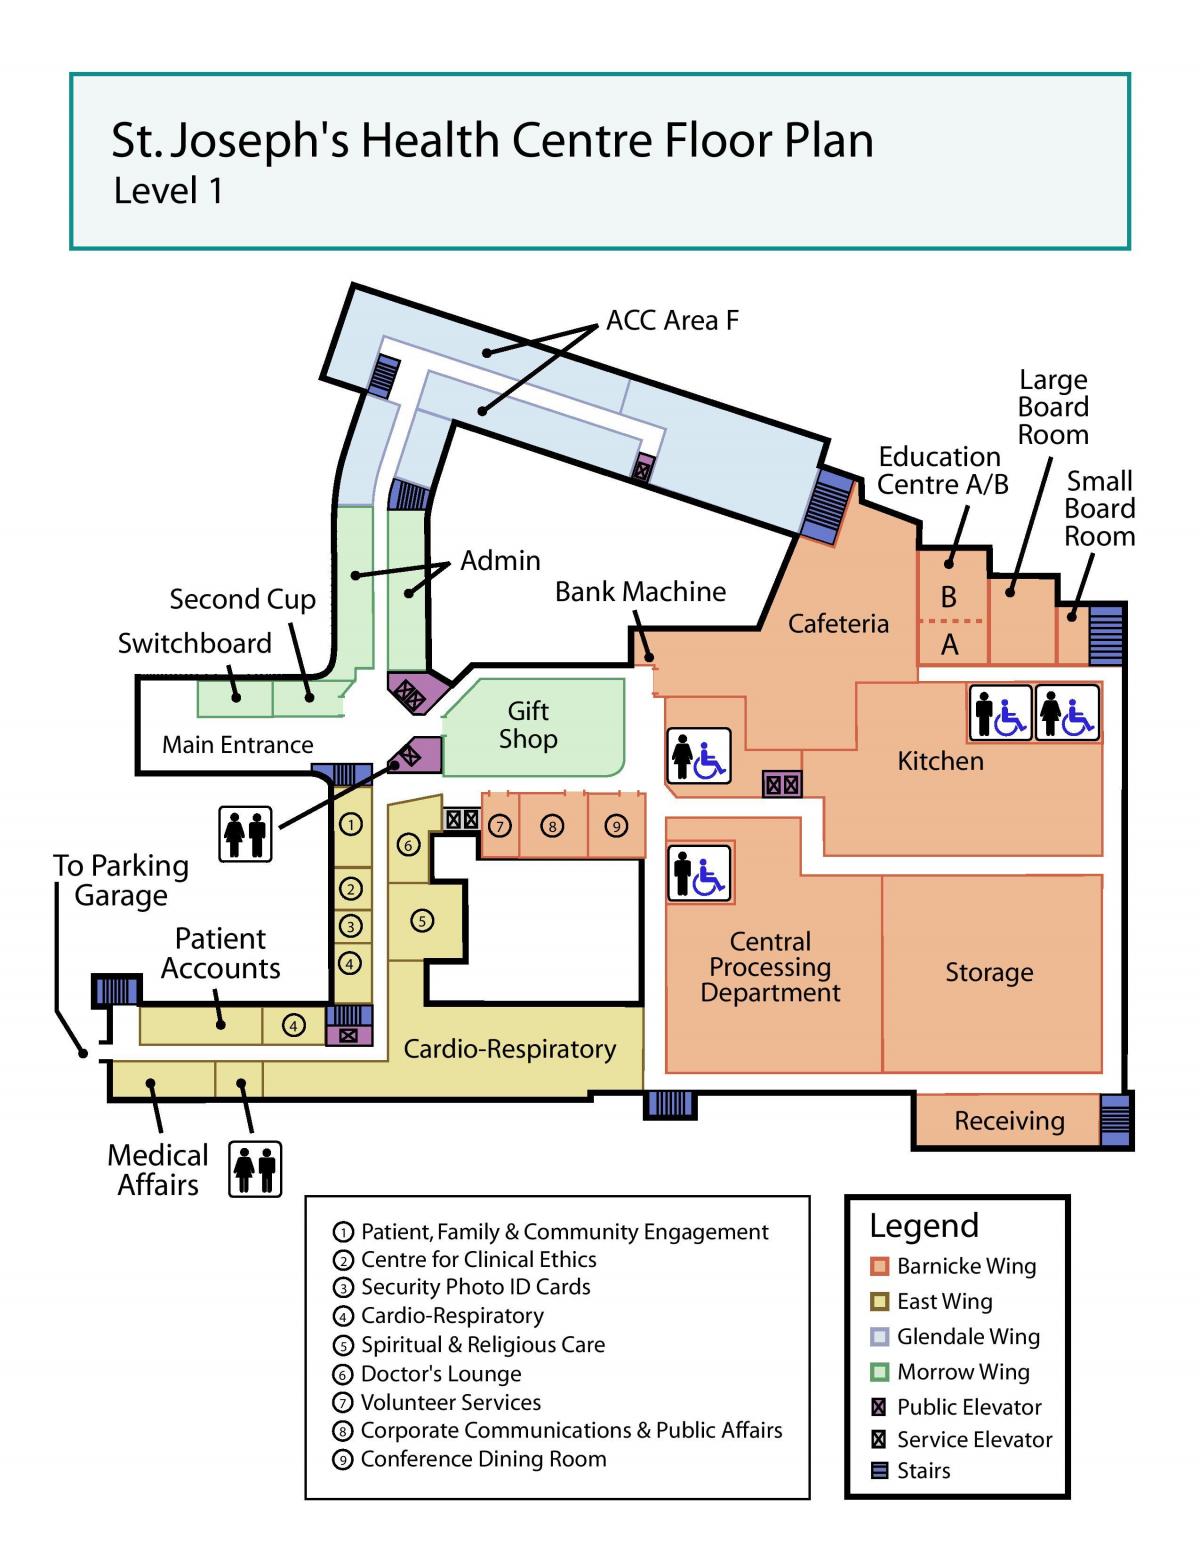 Χάρτης του Αγίου Ιωσήφ κέντρο Υγείας του Τορόντο επίπεδο 1